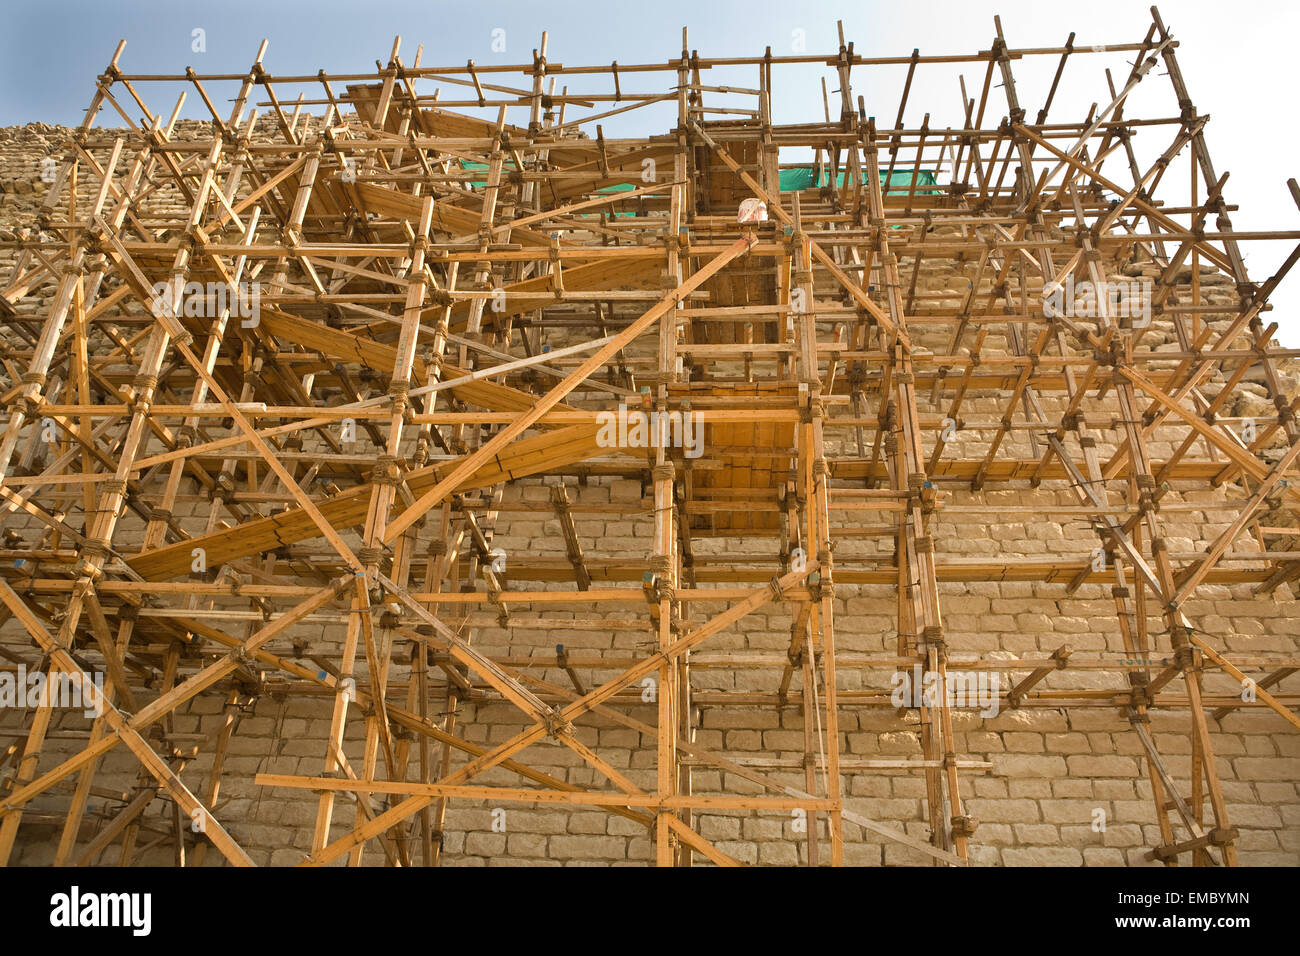 Restaurierungsarbeiten im Saqqara Pyramid Gebiet, Ägypten. Erhaltung und Restaurierung von Kulturgütern Stockfoto